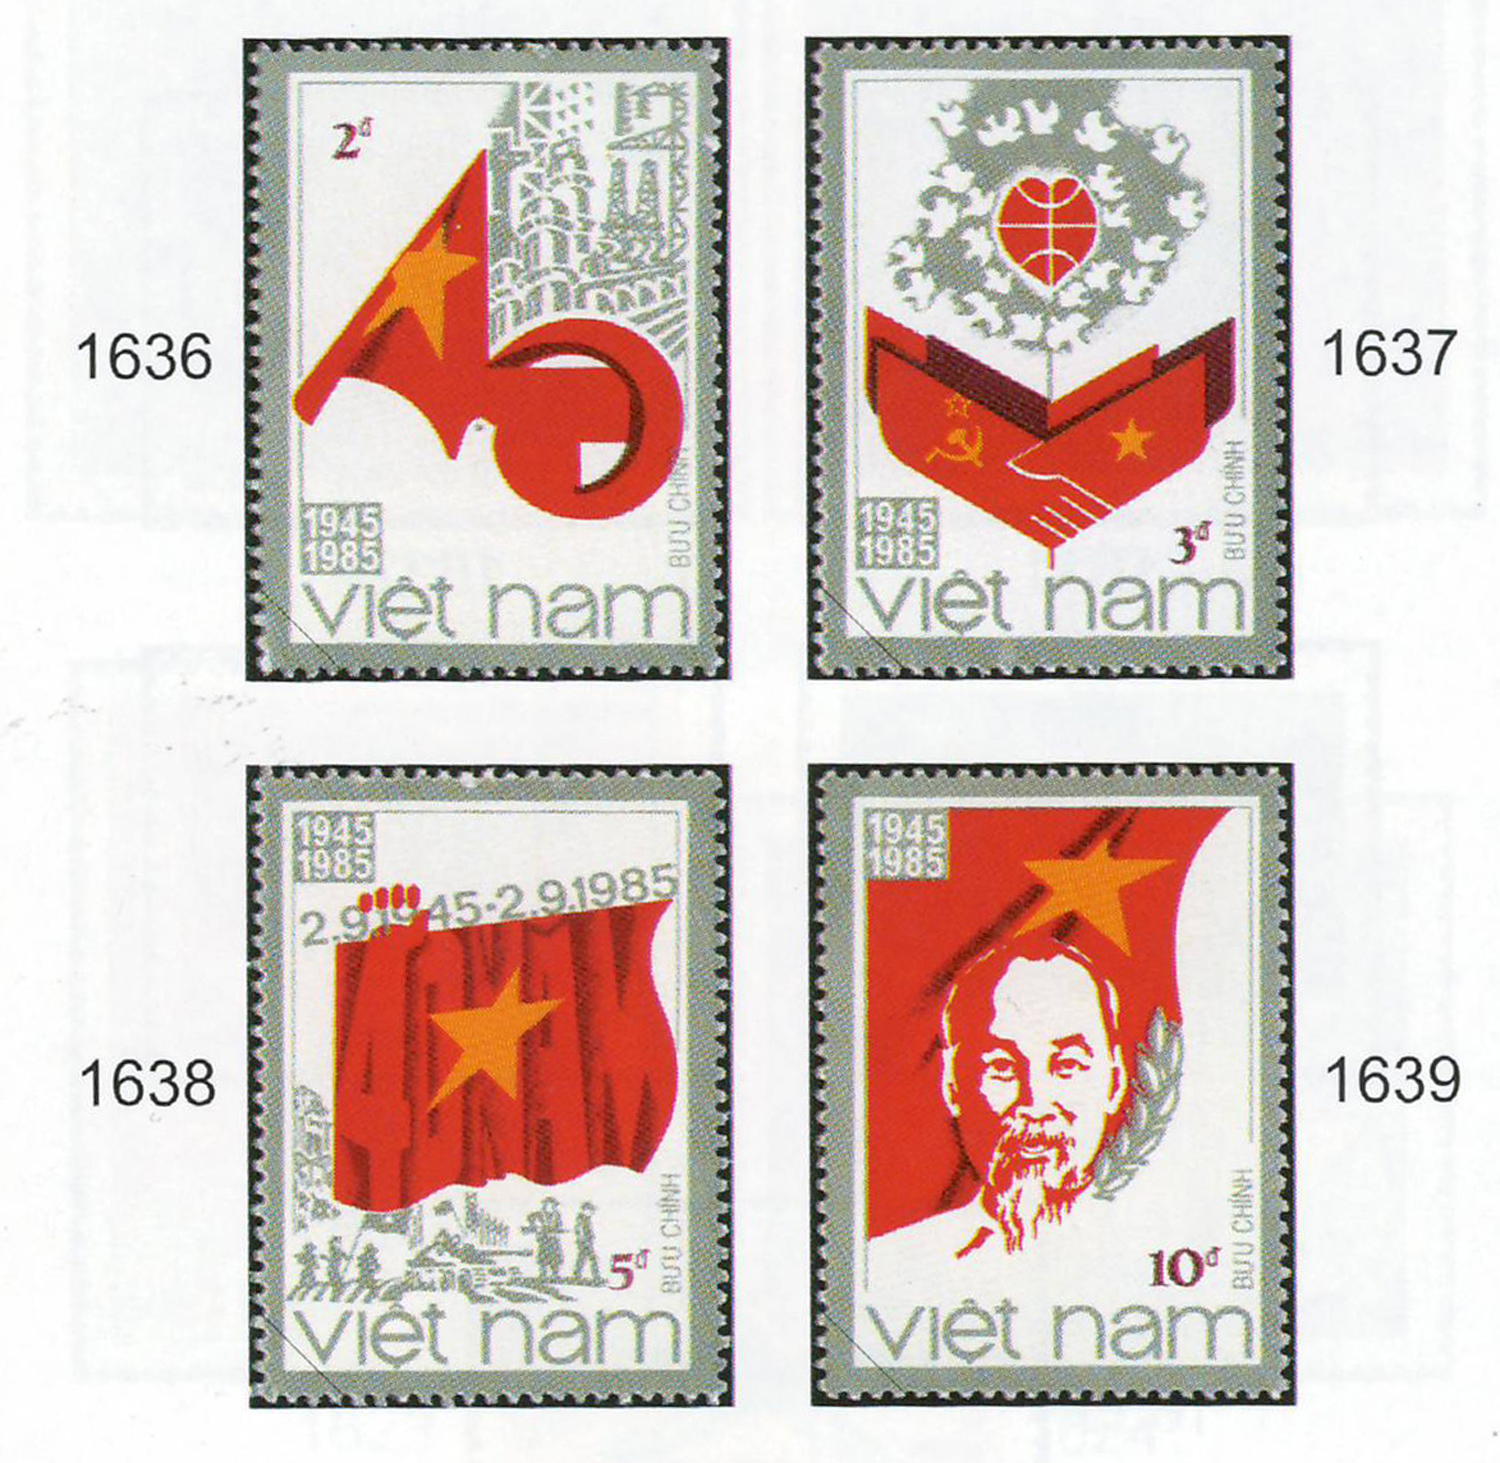 Kỷ niệm lần thứ 40 Cách mạng tháng Tám và Quốc khánh 2/9. Bộ tem được xuất bản năm 1945 do họa sỹ Trần Thế Vinh thiết kế.